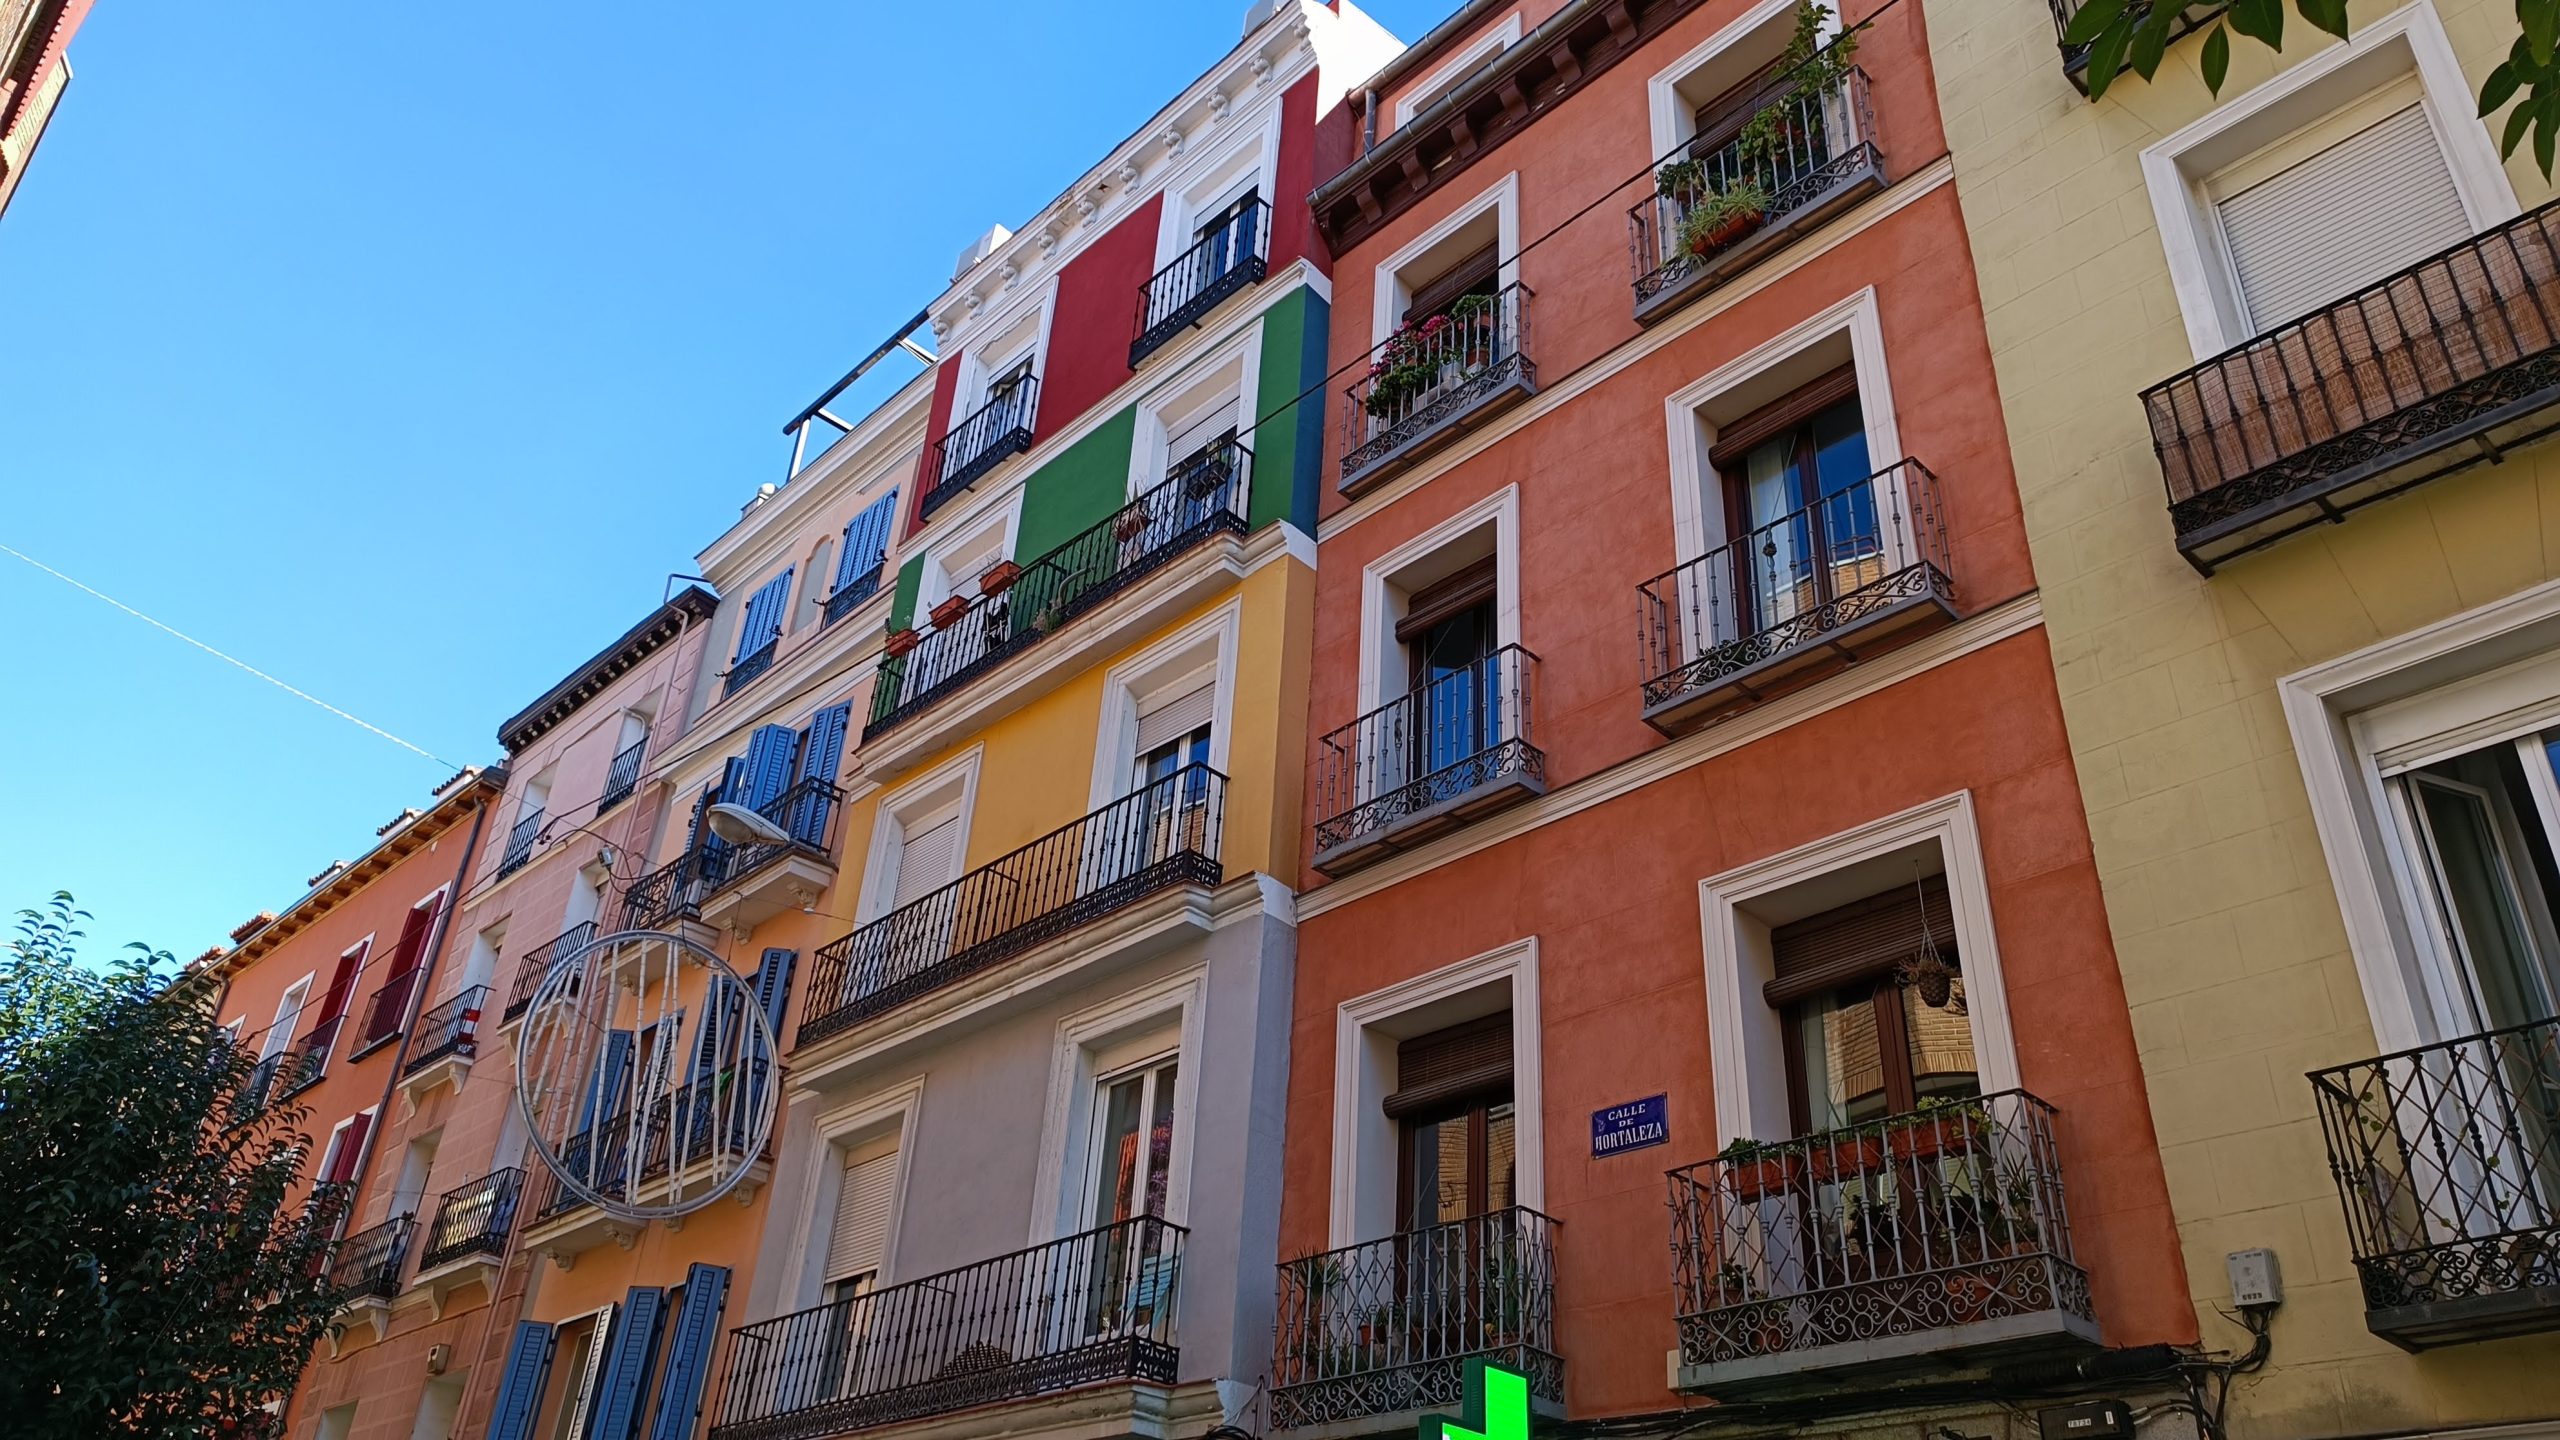 Situata a nord della Gran Vía e a est di Malasaña, Chueca ha una lunga reputazione come zona della vita notturna gay di Madrid.